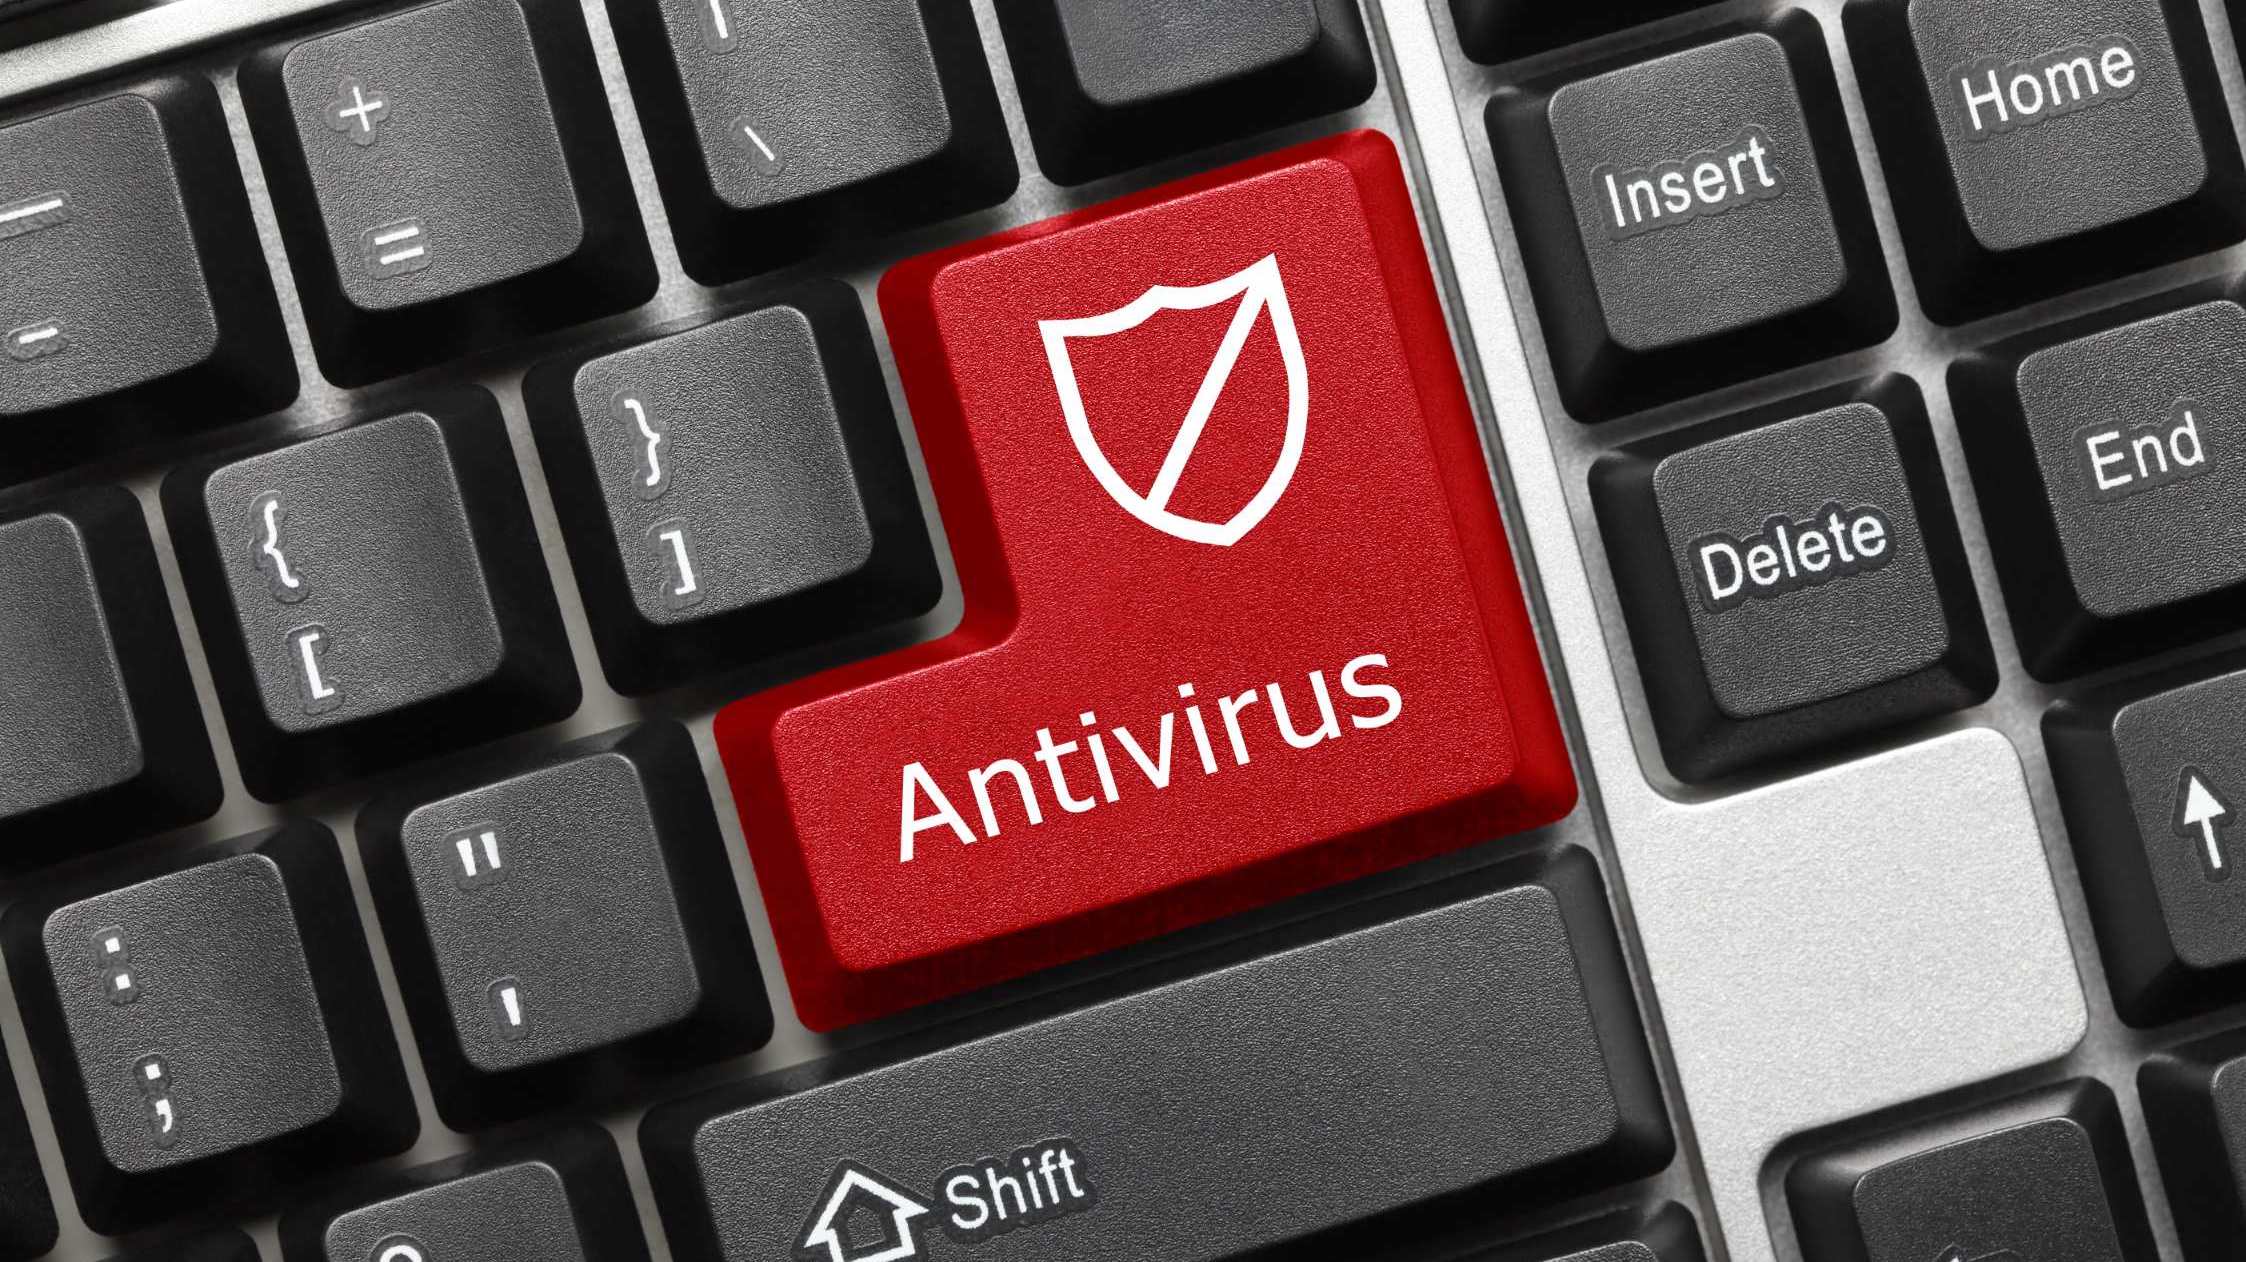 antivirus button on keyboard